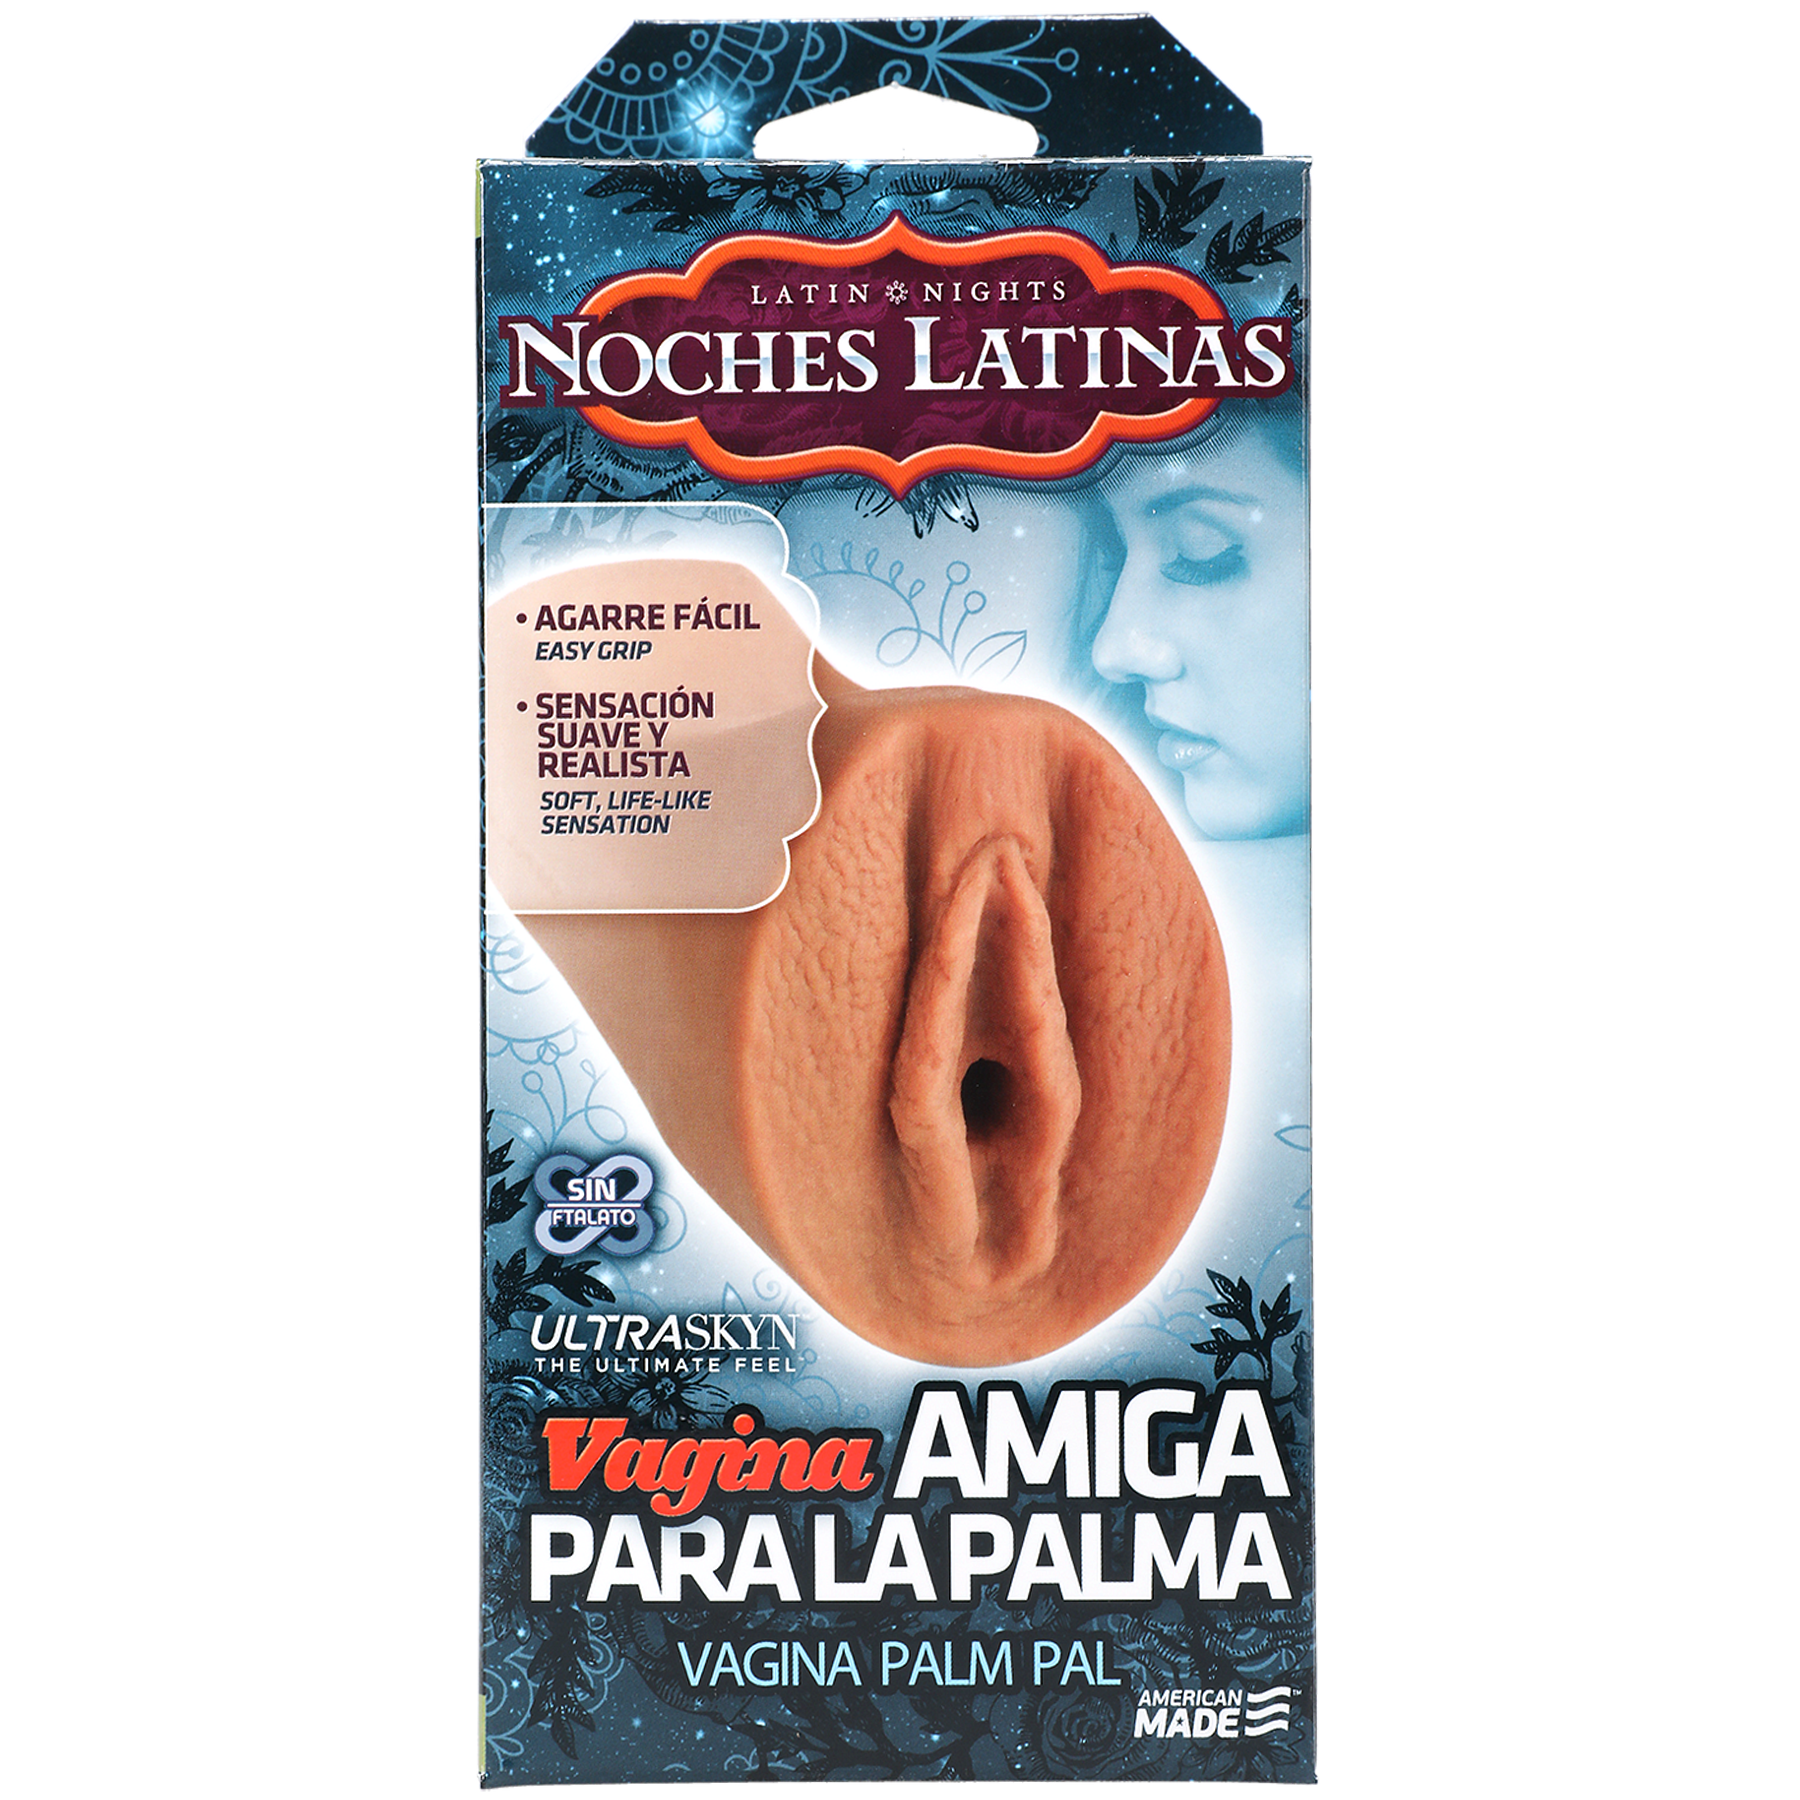 Doc Johnson Noches Latinas Vagina Amiga Para La Palma Ultraskyn Masturbator - Pussy